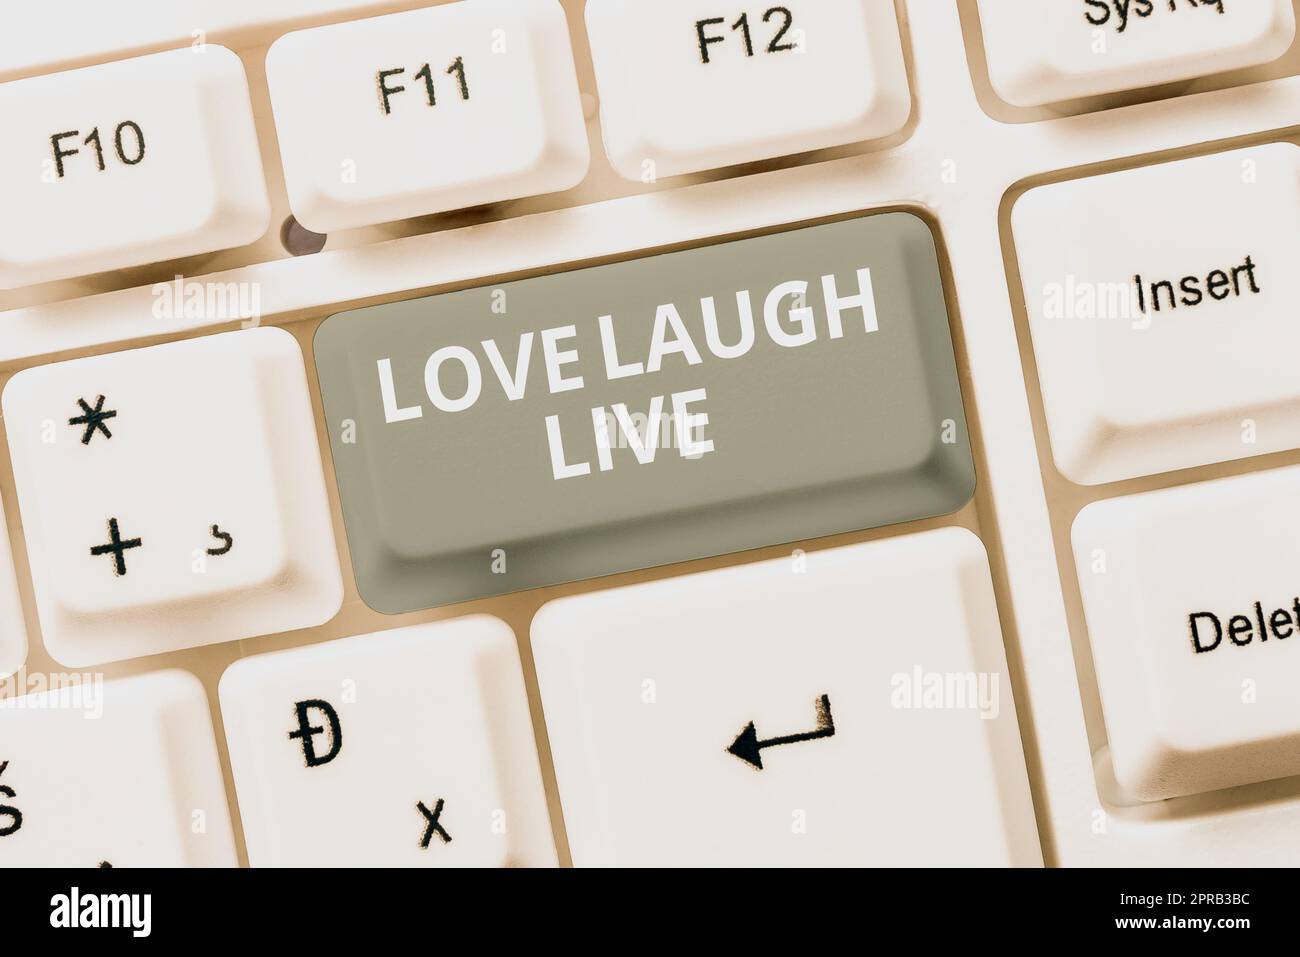 Affichage conceptuel Love Laugh Live. Internet concept être inspiré positif appréciez vos jours riant bonne humeur -48672 Banque D'Images